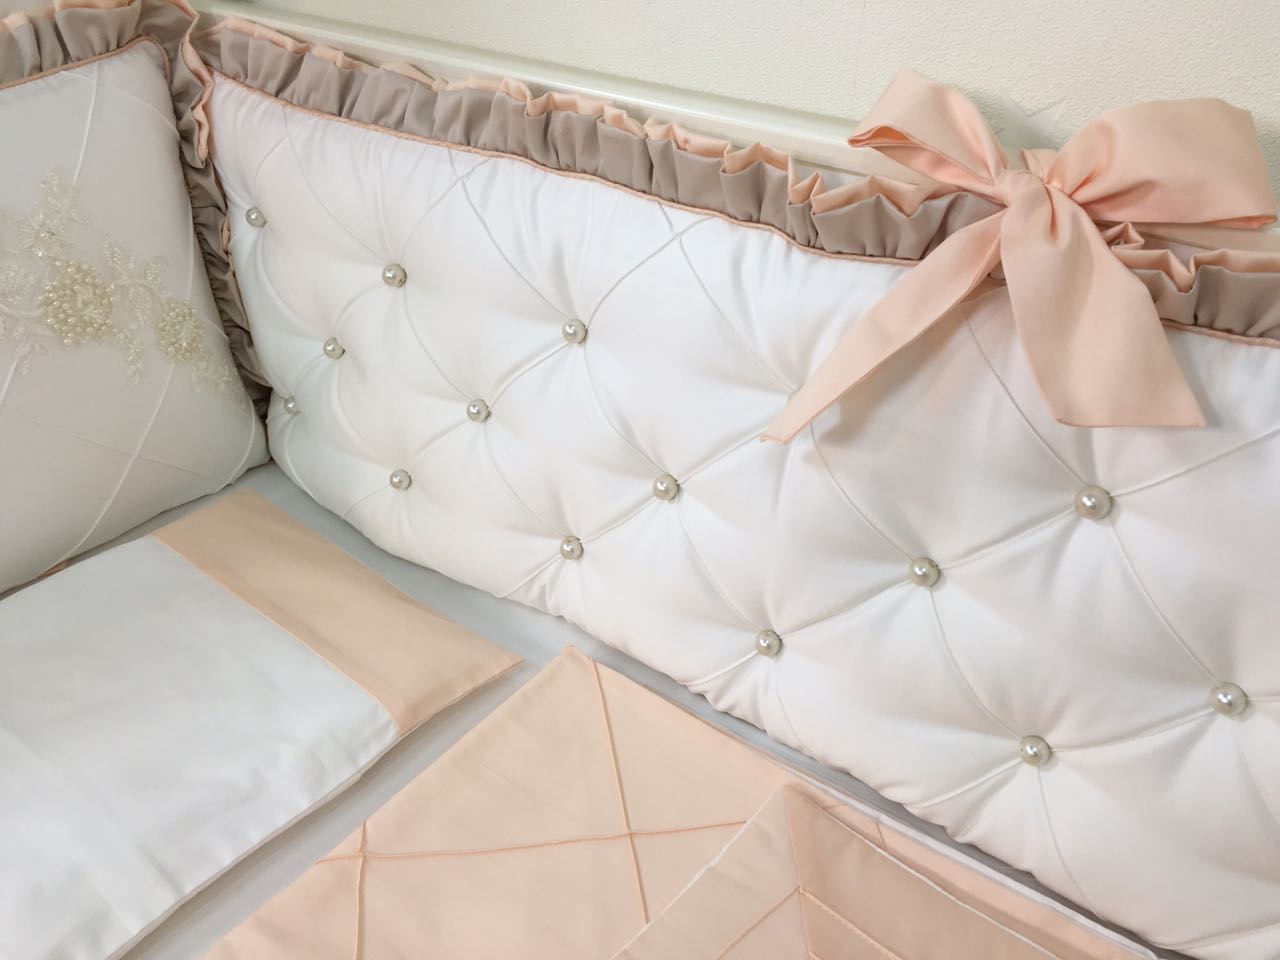 Комплект Marele, коллекция "Роскошь" цвет персик/беж, для прямоугольной кроватки